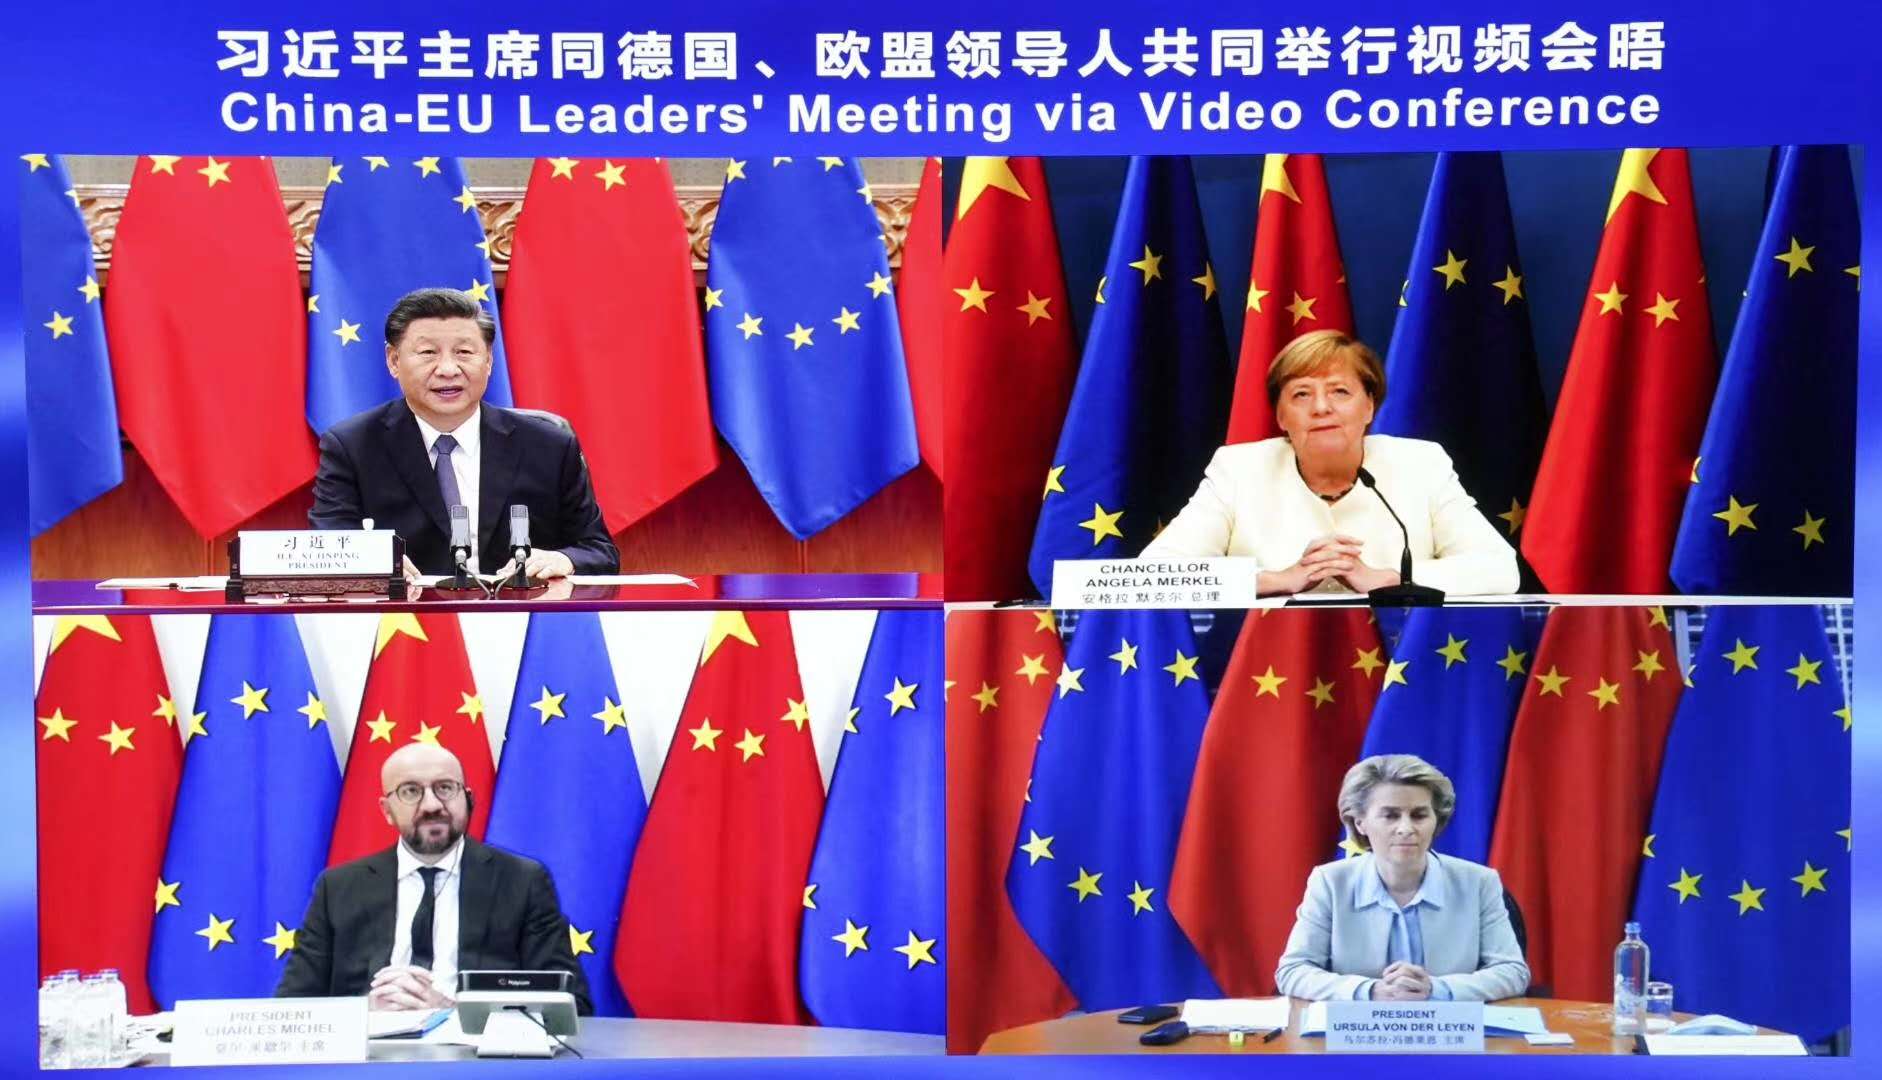 Le président chinois Xi Jinping, la chancelière allemande Angela Merkel, le président du Conseil européen Charles Michel et la présidente de la Commission européenne Ursula von der Leyen lors du sommet Chine-Europe par visioconférence, le lundi 14 septembre 2020. (Source : Teller Report)